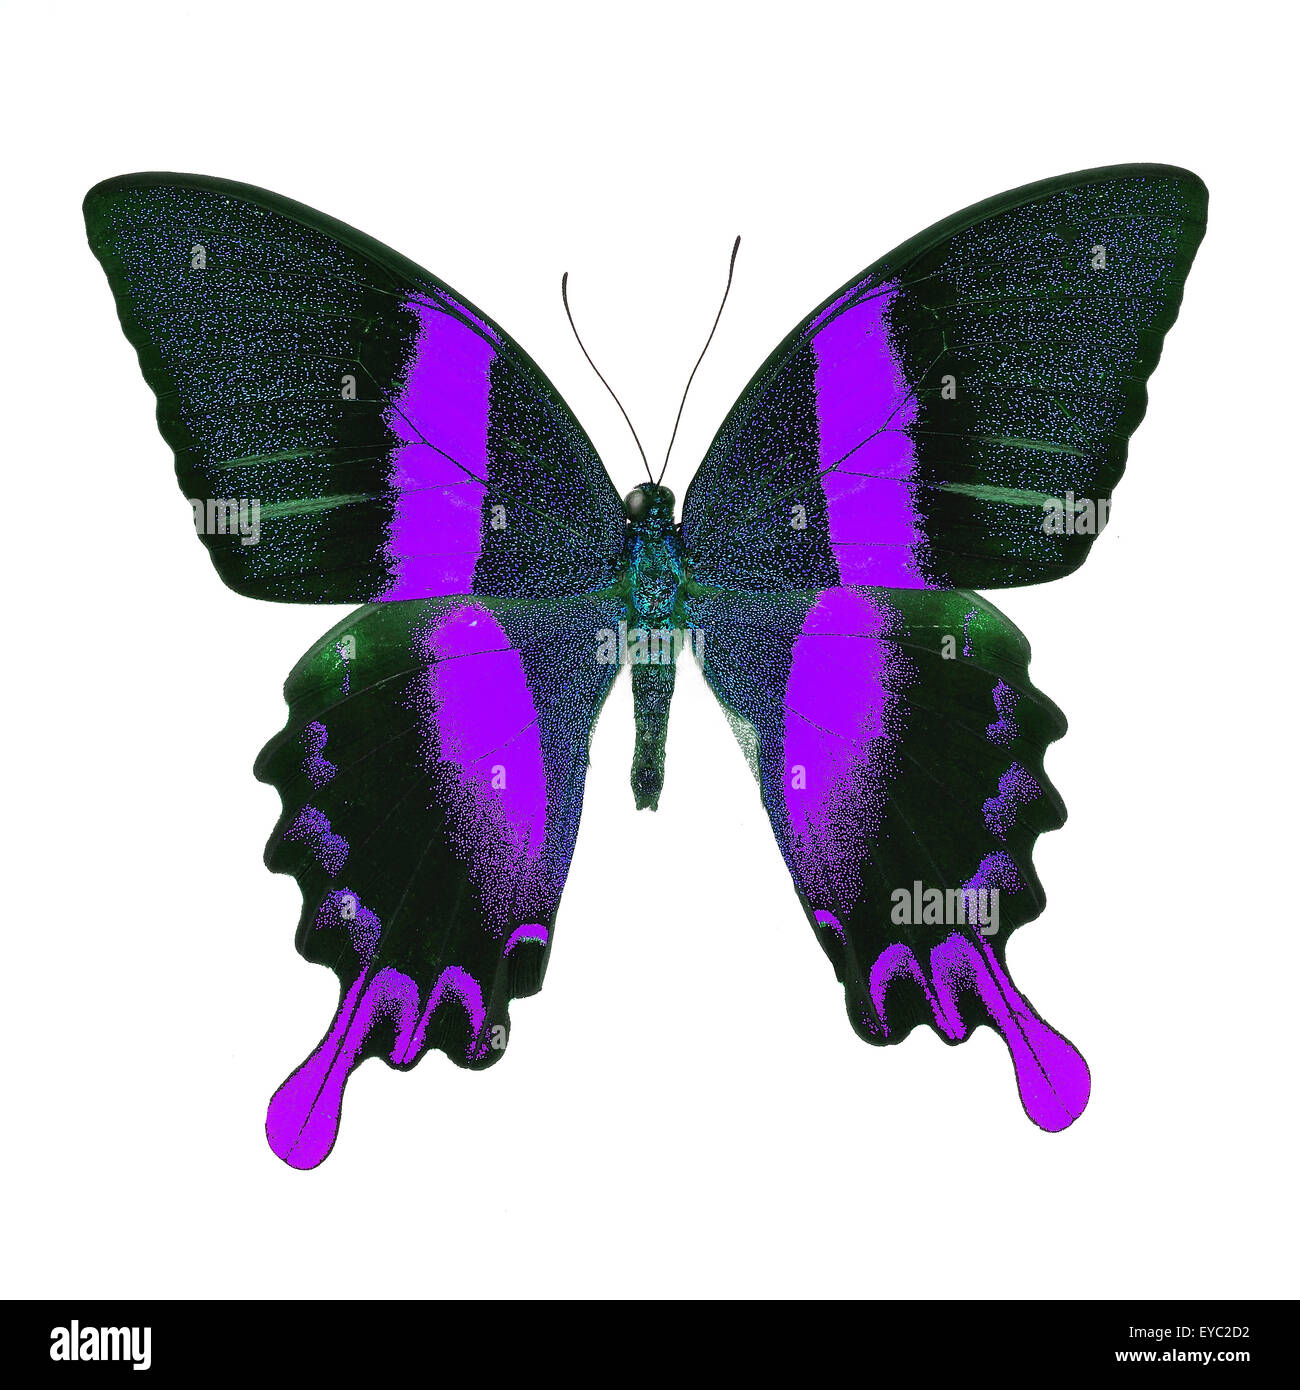 Bella viola butterfly, maestose e verdi a coda di rondine (Papilio blumei) in fantasia profilo colore, isolato su sfondo bianco Foto Stock